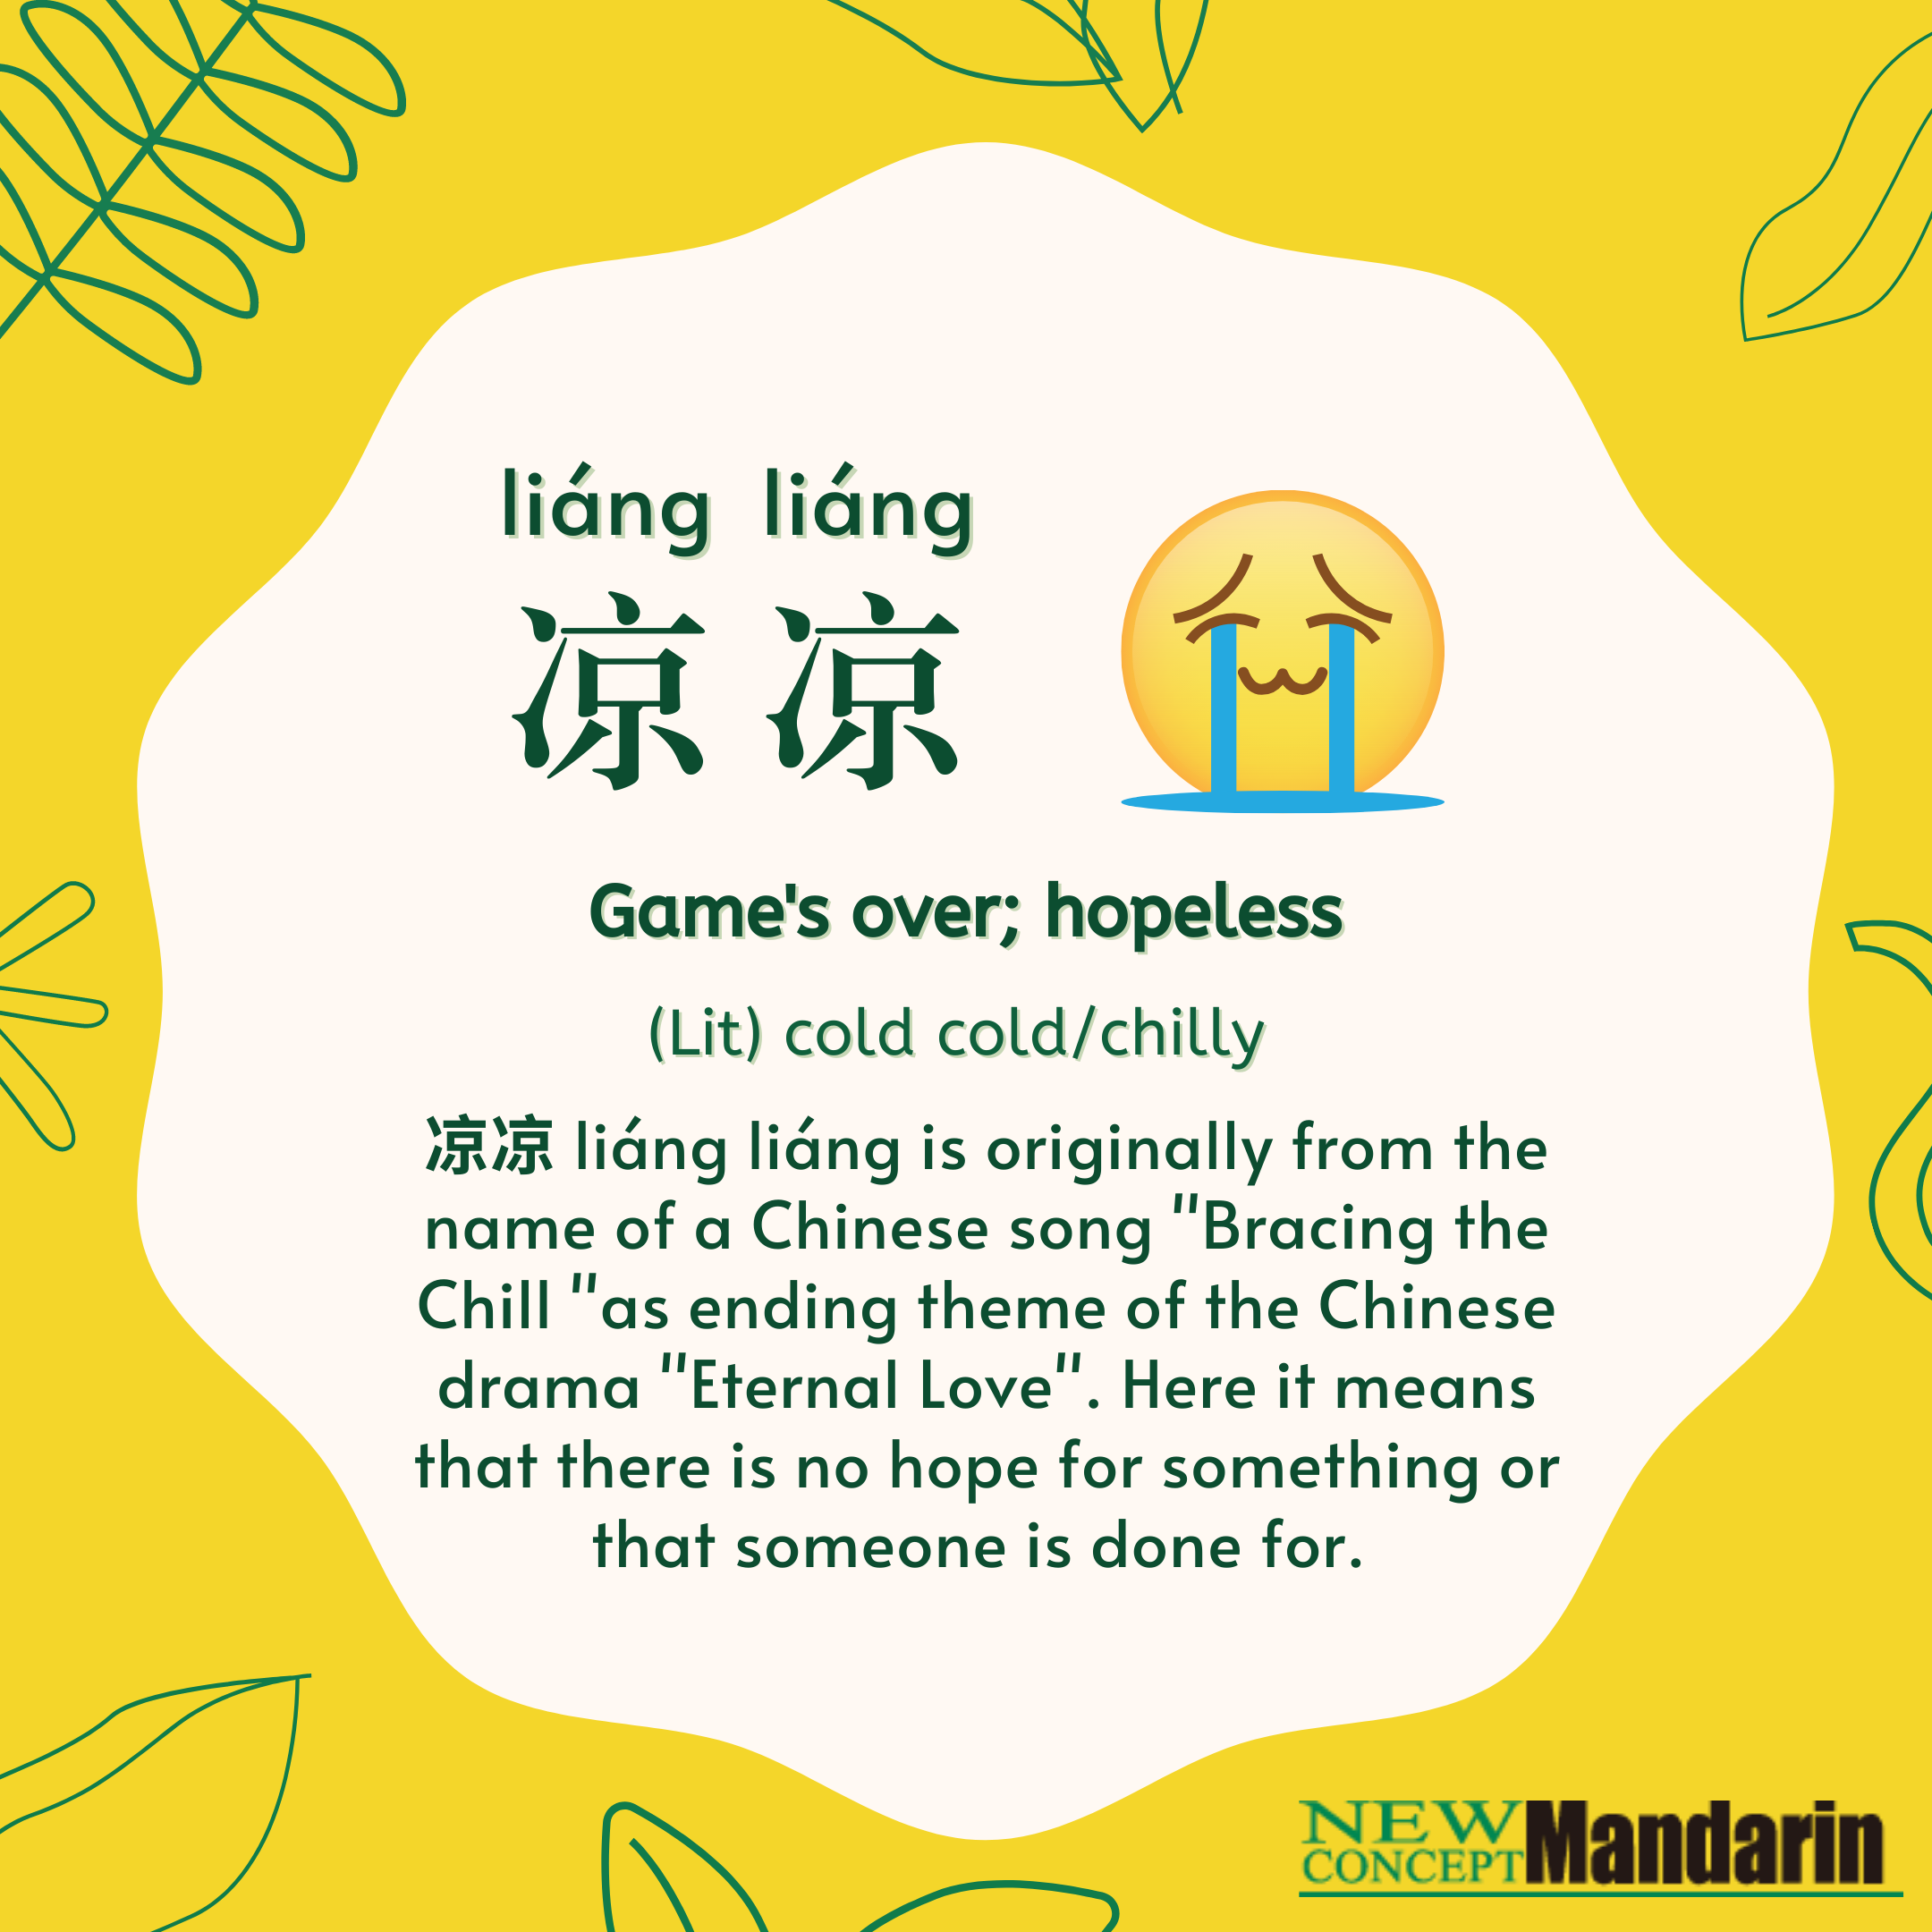 凉凉 liáng liáng Game's over; hopeless. Lit: cold cold/chilly. 凉凉 liáng liáng is originally from the name of a Chinese song 